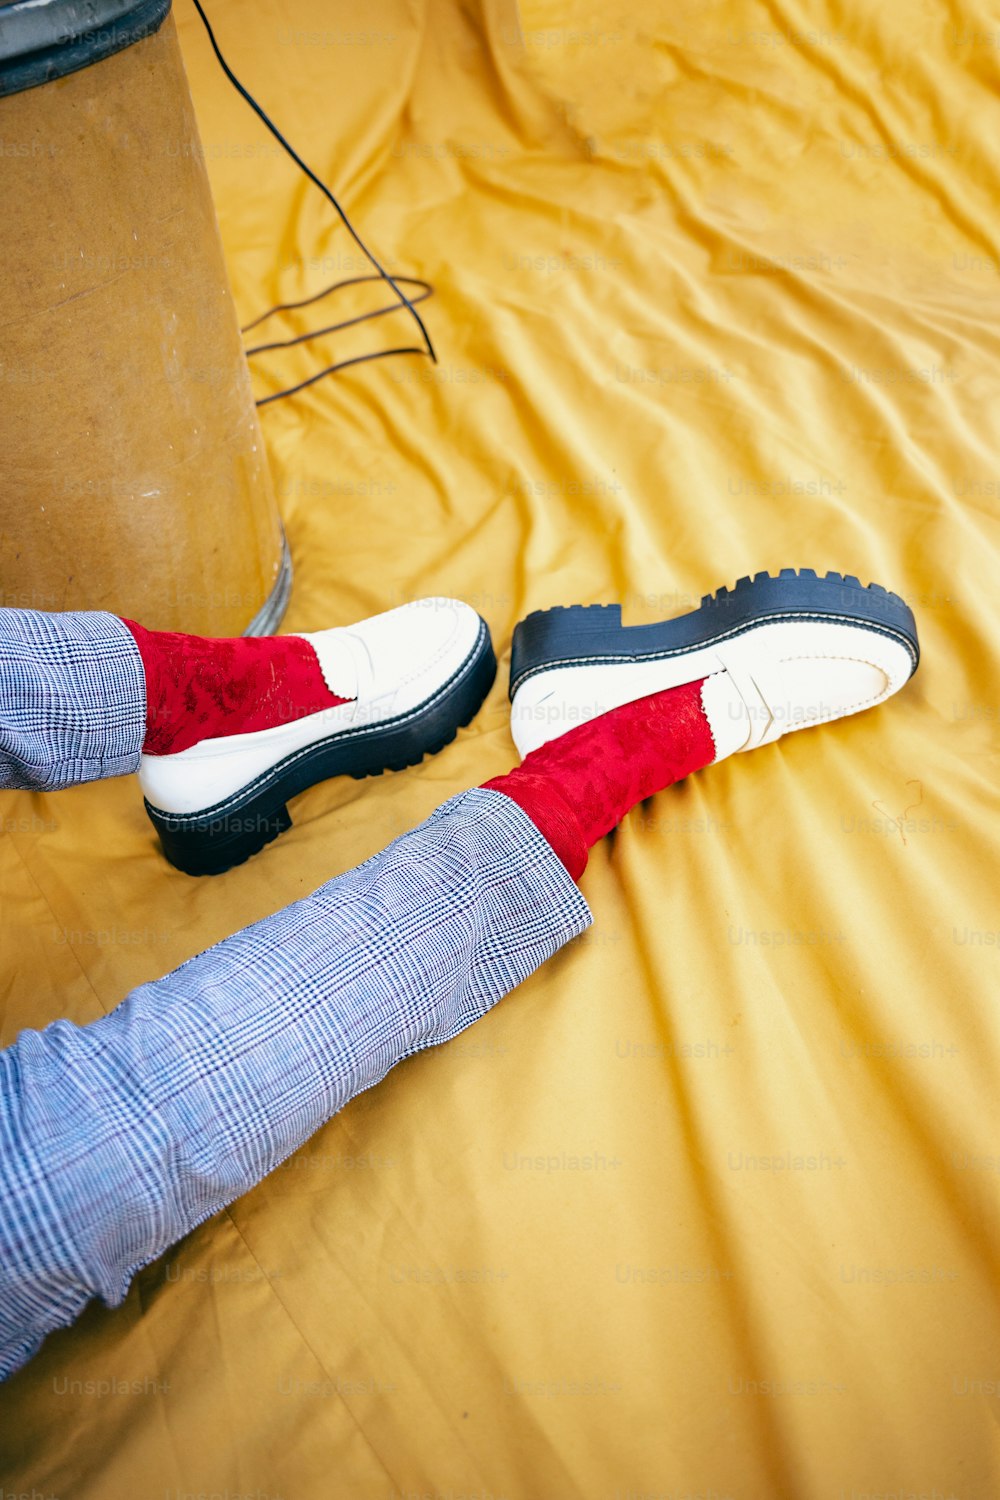 una persona sdraiata su un letto con scarpe rosse e bianche